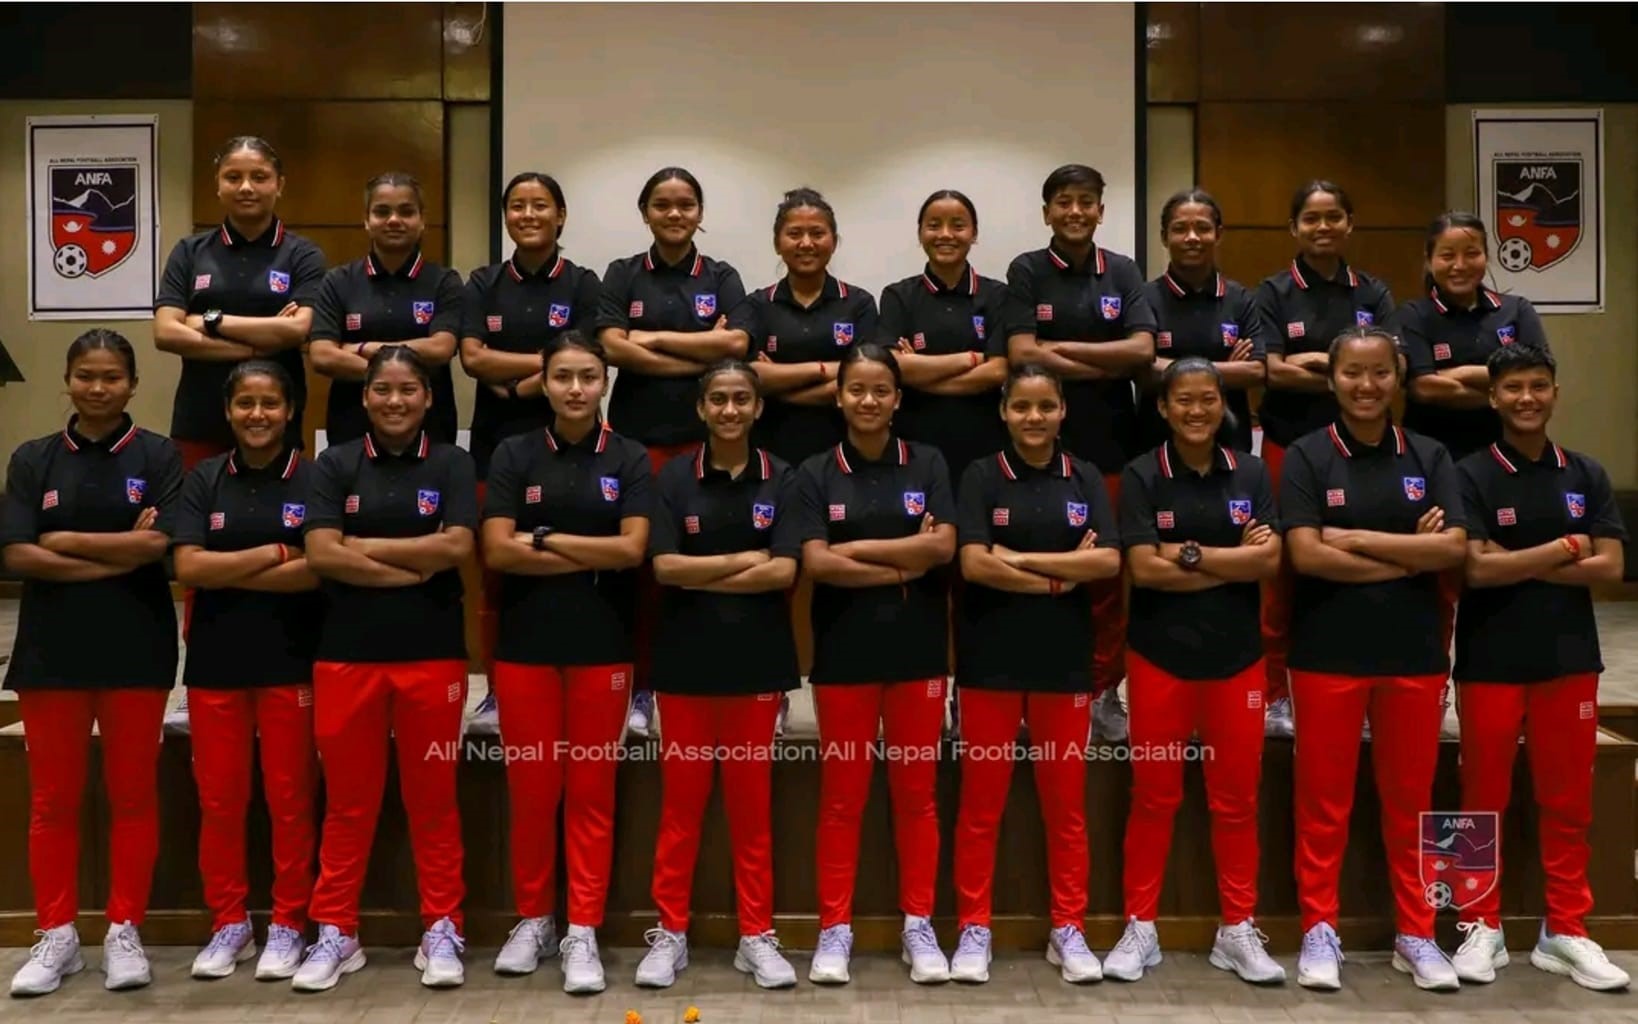 Nepal facing Bhutan in U-17 Women’s Championship today